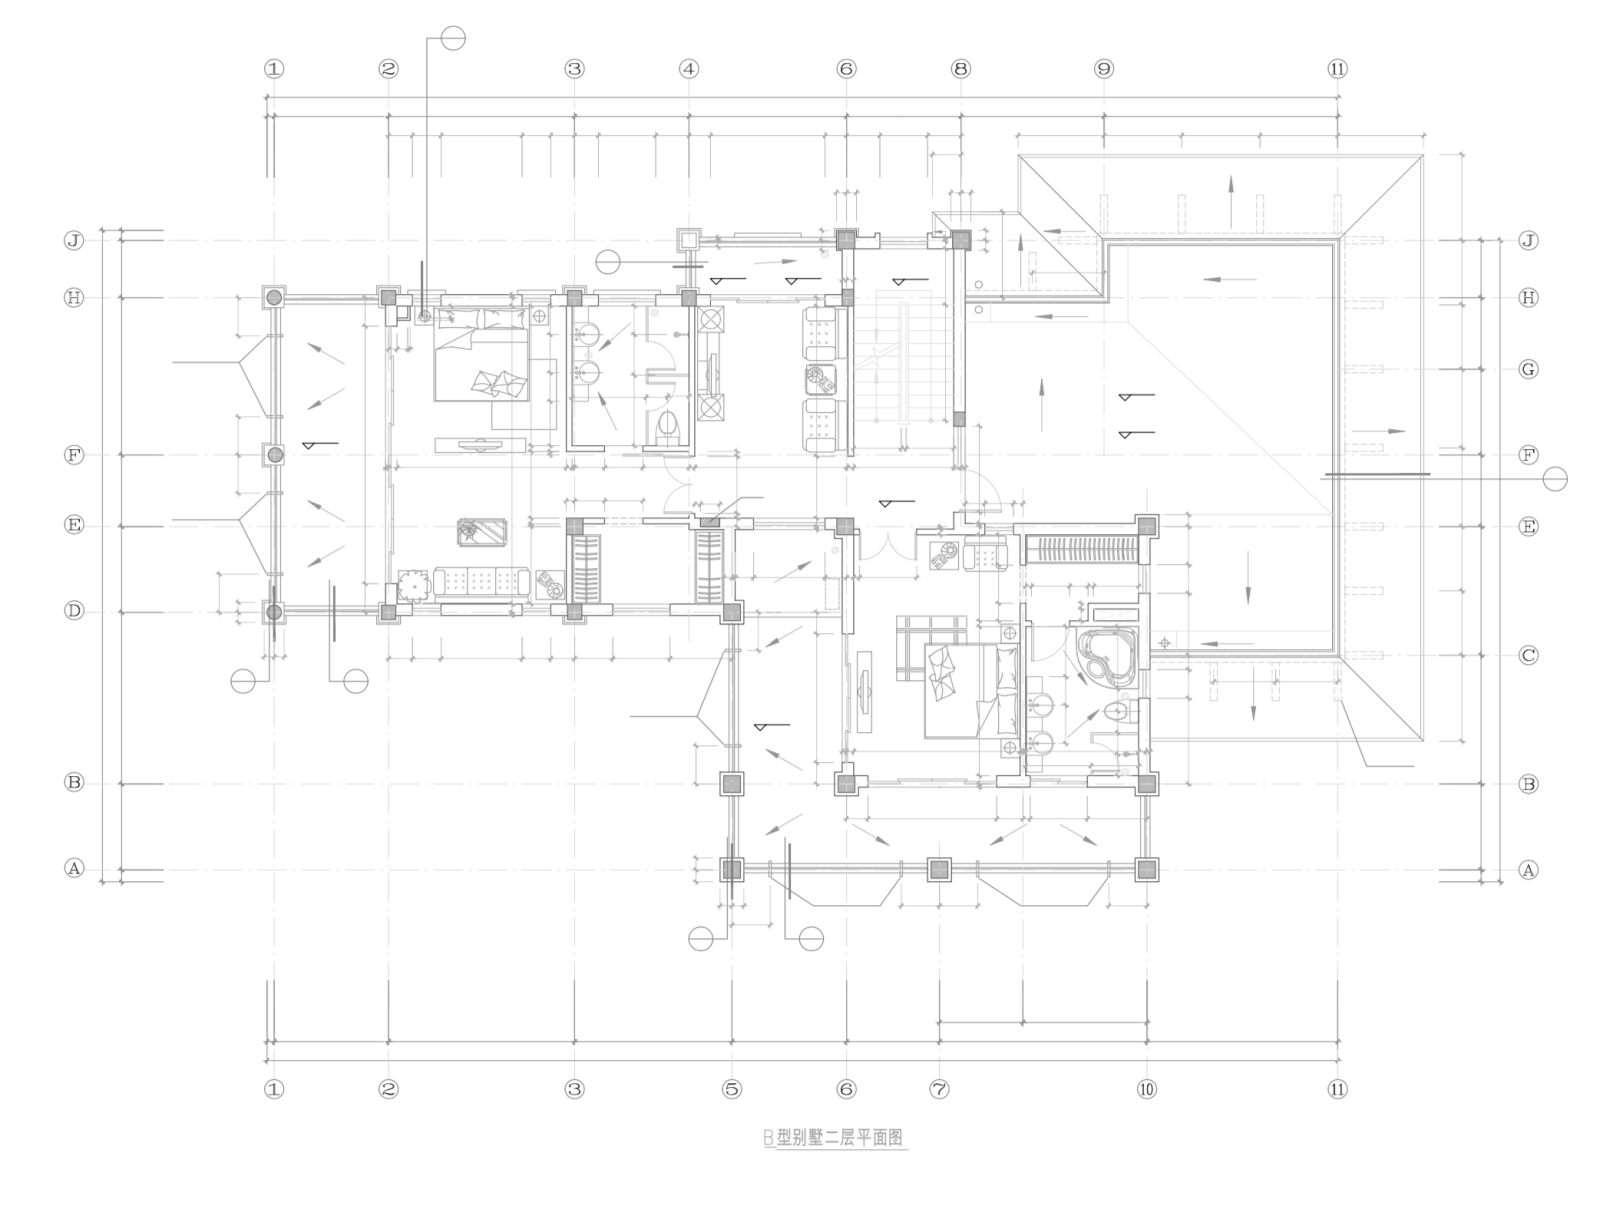 欧式三层独栋别墅建筑设计施工图施工图下载【ID:149861113】